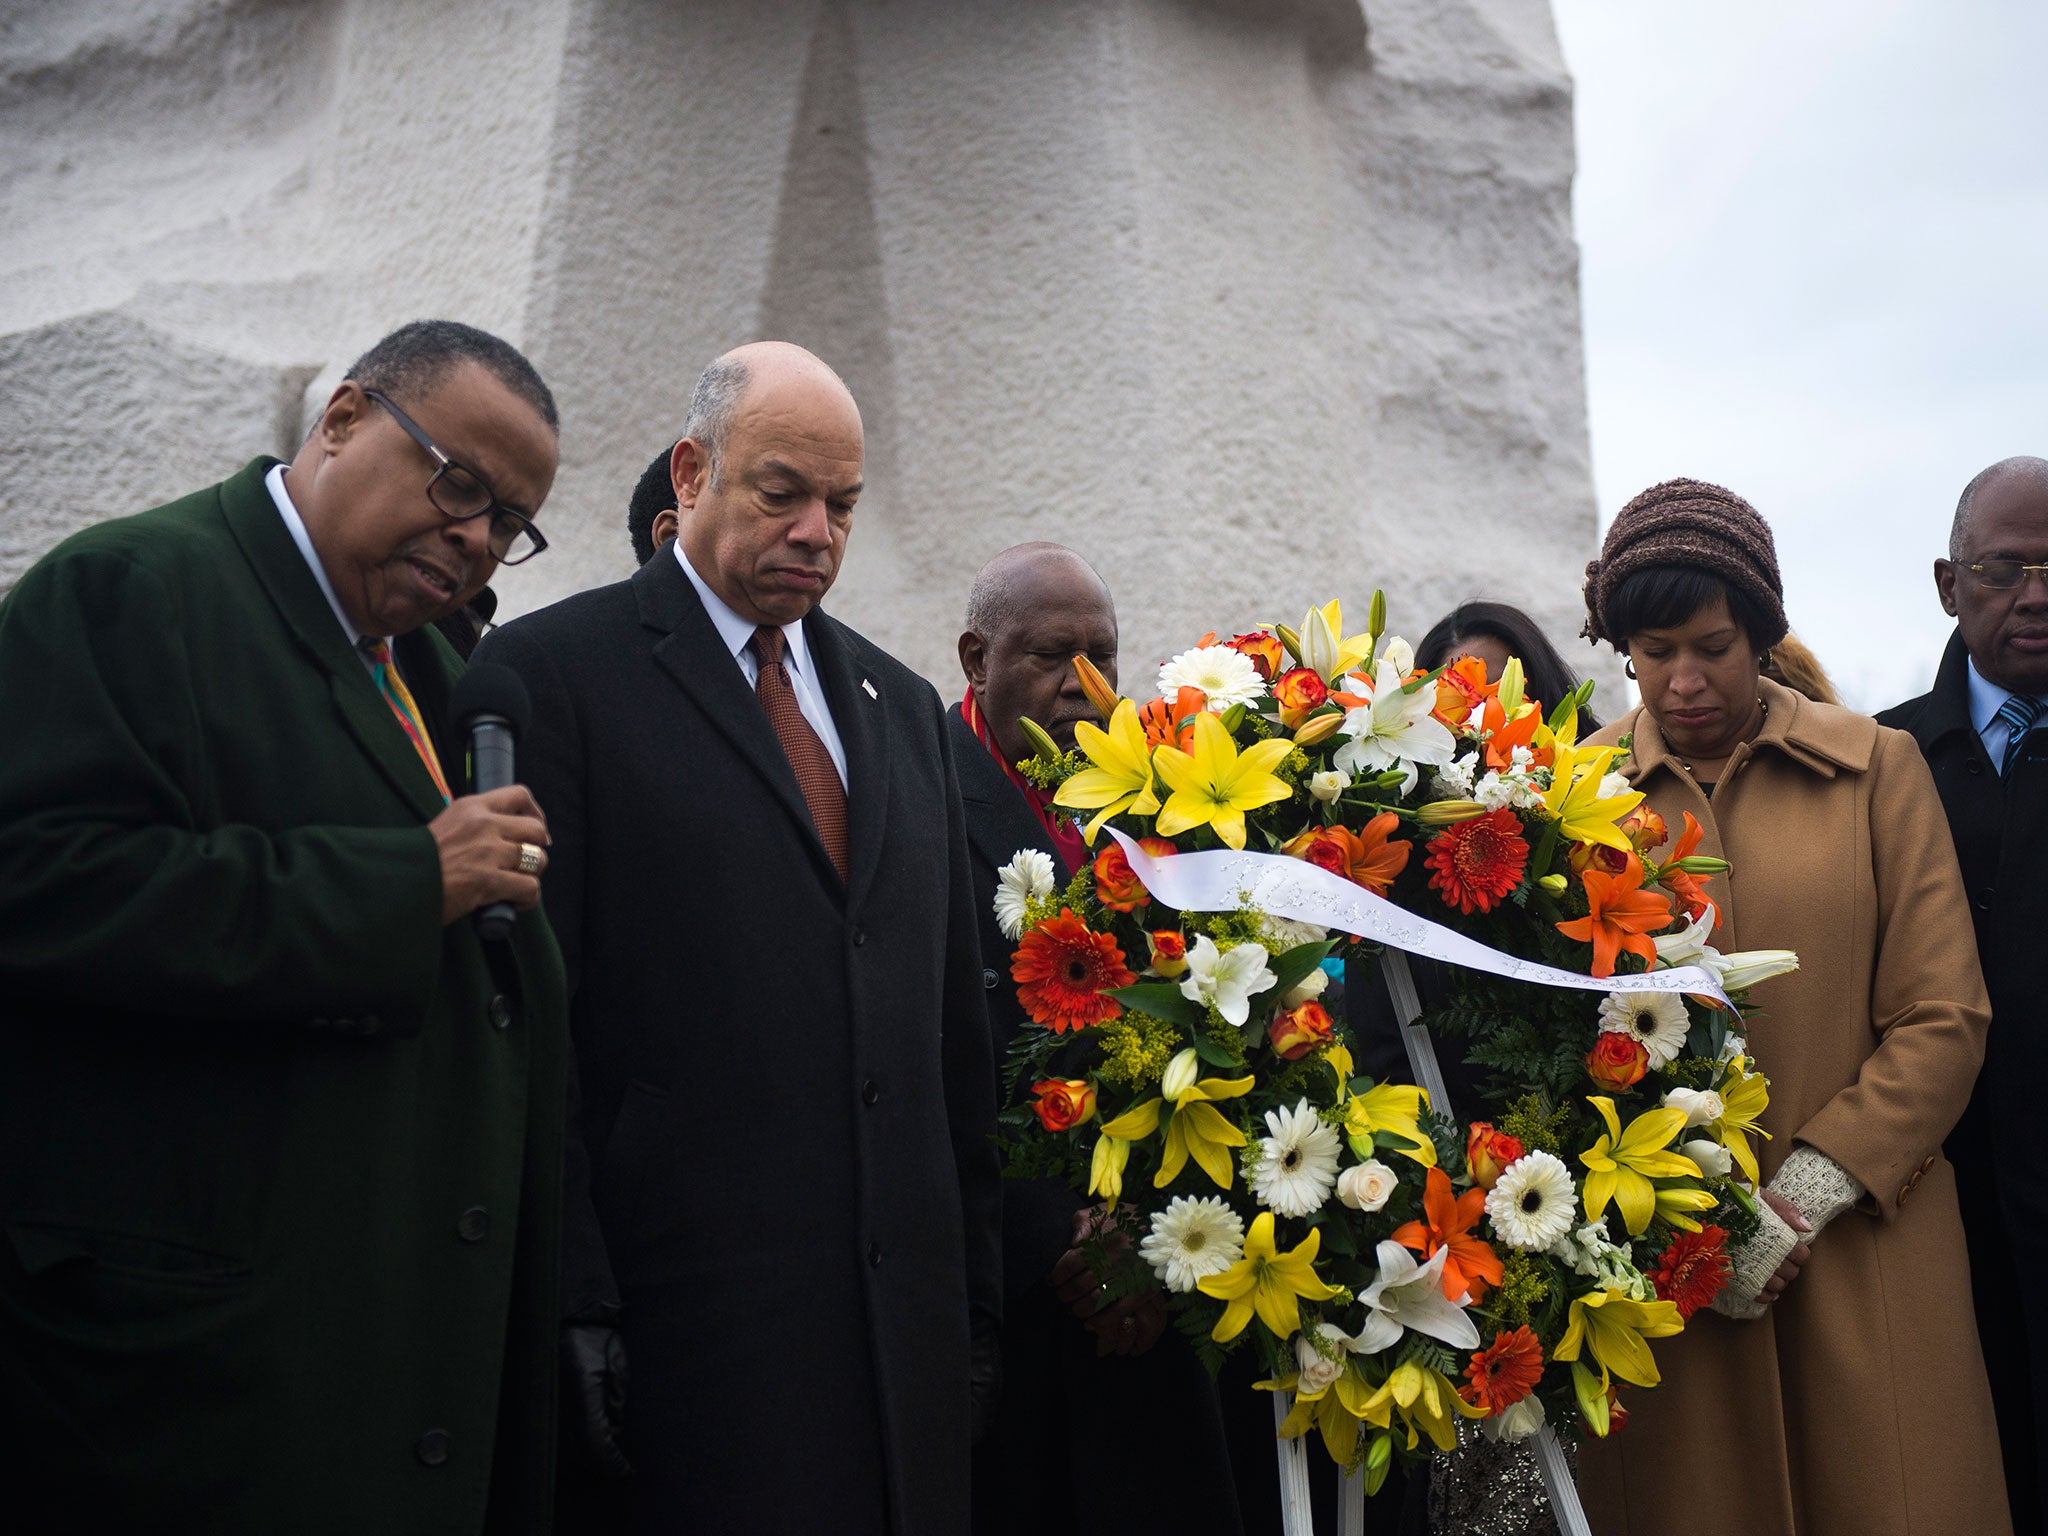 El secretario de Seguridad Nacional y el alcalde de Washington DC, junto con el presidente y director general de la Fundación Martin Luther King Jr. Memorial, dejan una corona de flores en el monumento a MLK durante una ceremonia en el National Mall, en Washington DC, en 2015